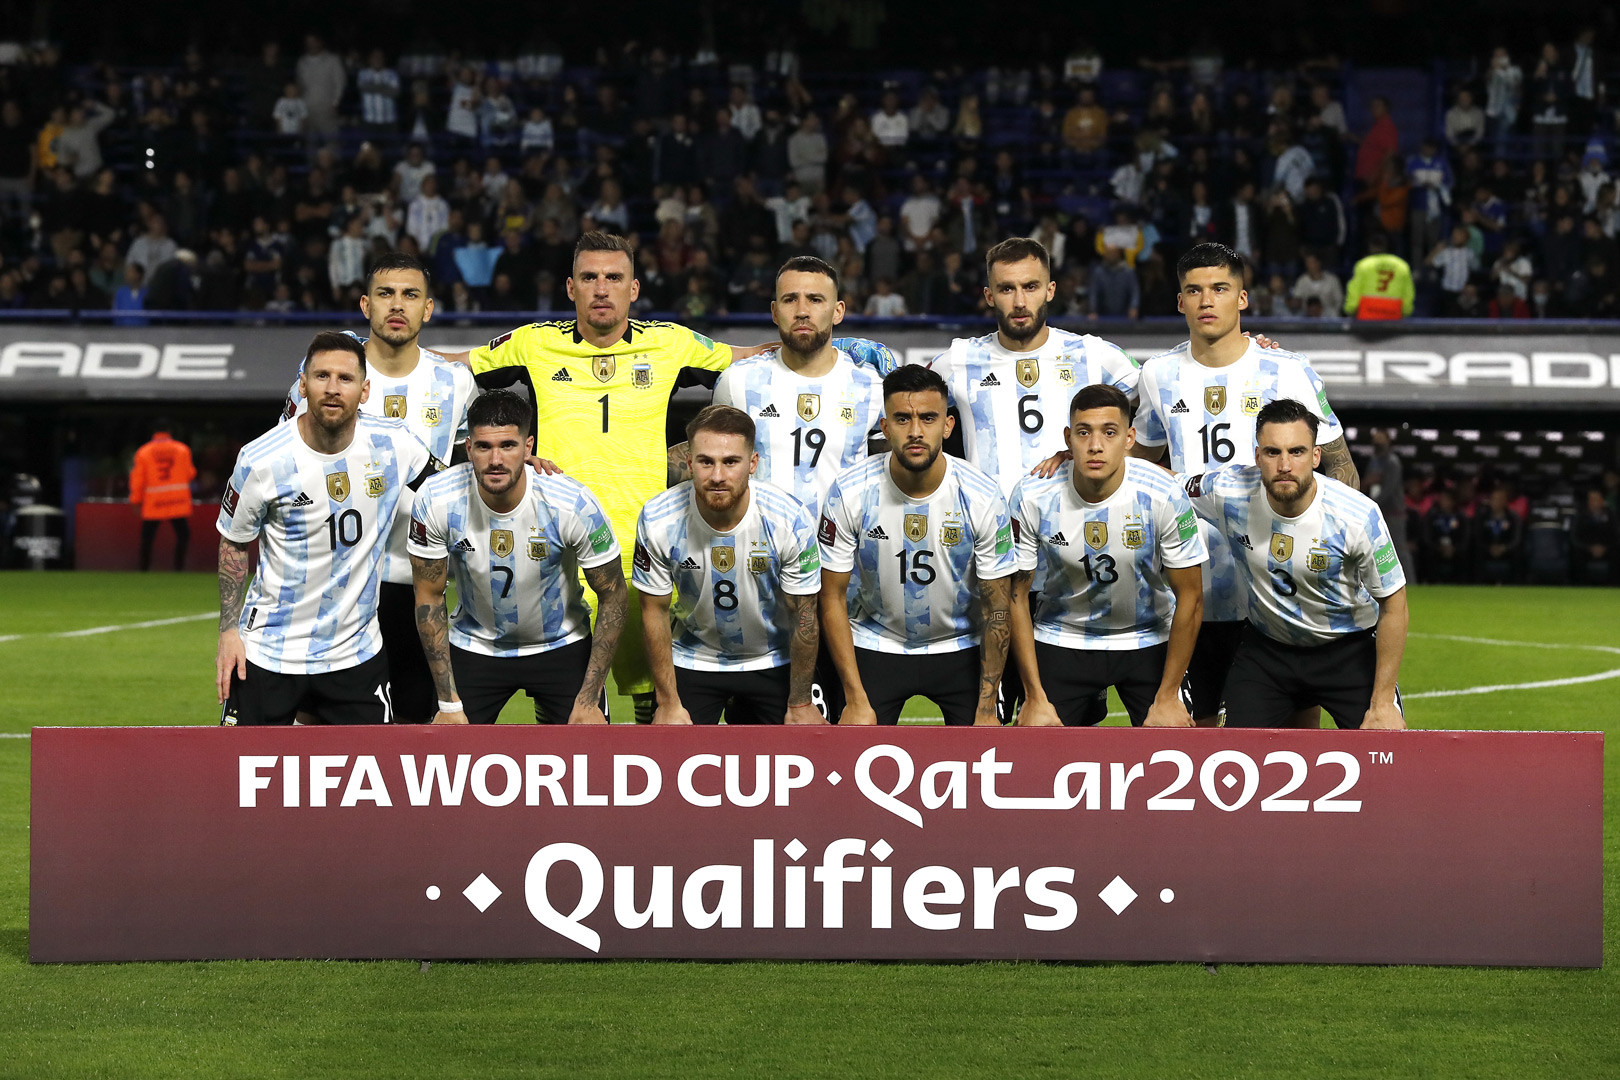 Trận chung kết giữa Argentina và Pháp tại World Cup 2022 hứa hẹn sẽ rất đáng xem. Hãy xem ảnh về hai đội bóng này để cảm nhận được sự kịch tính, quyết định và sự xuất sắc của những cầu thủ hàng đầu trên thế giới.